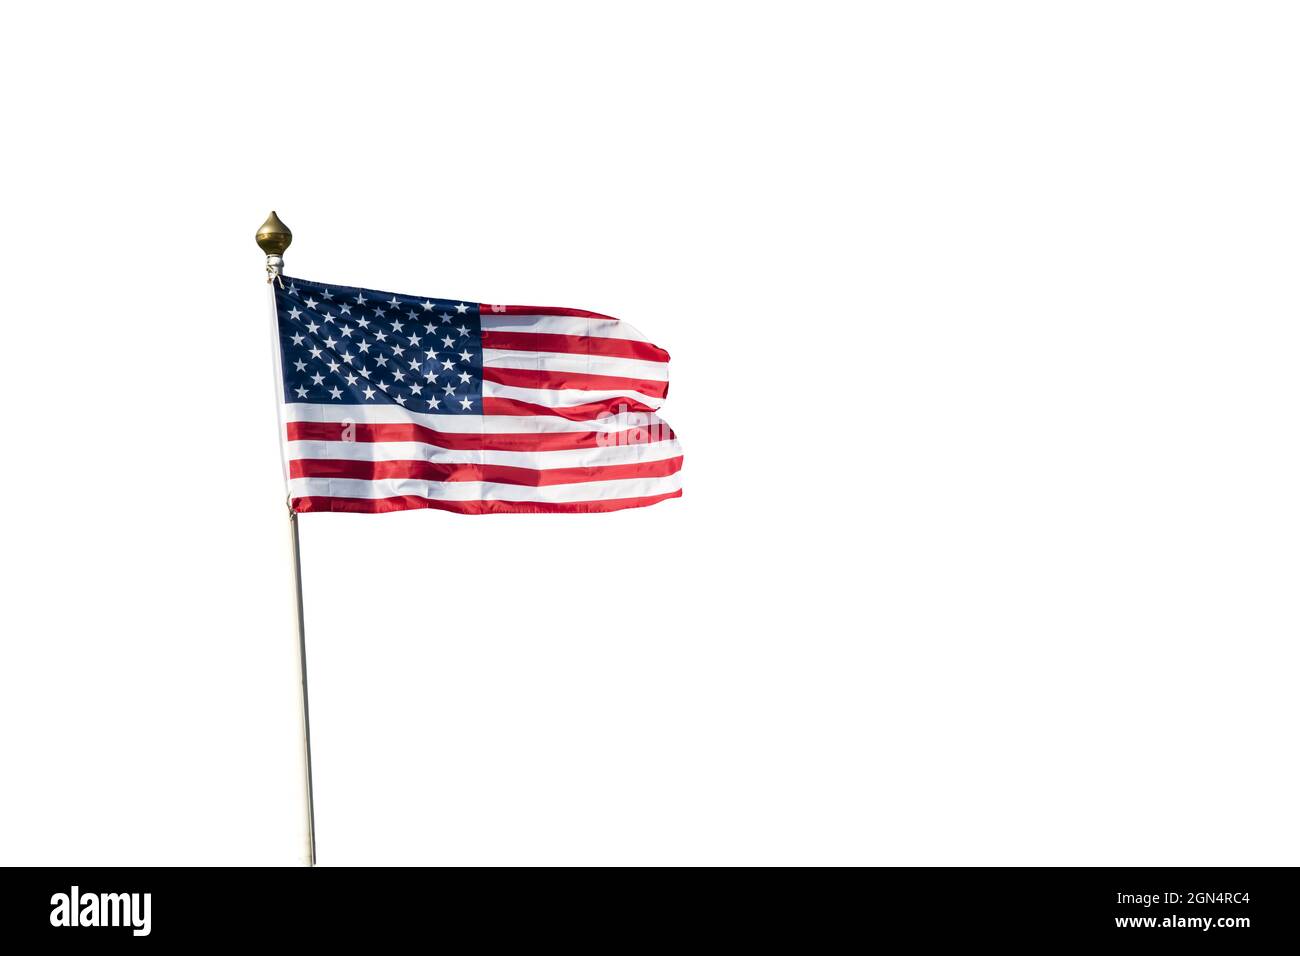 Ein Ausschnitt der amerikanischen Flagge oder der Sterne und Streifen. Siehe 2GN4RBE für Versionen, die gegen einen blauen Himmel fliegen. Stockfoto